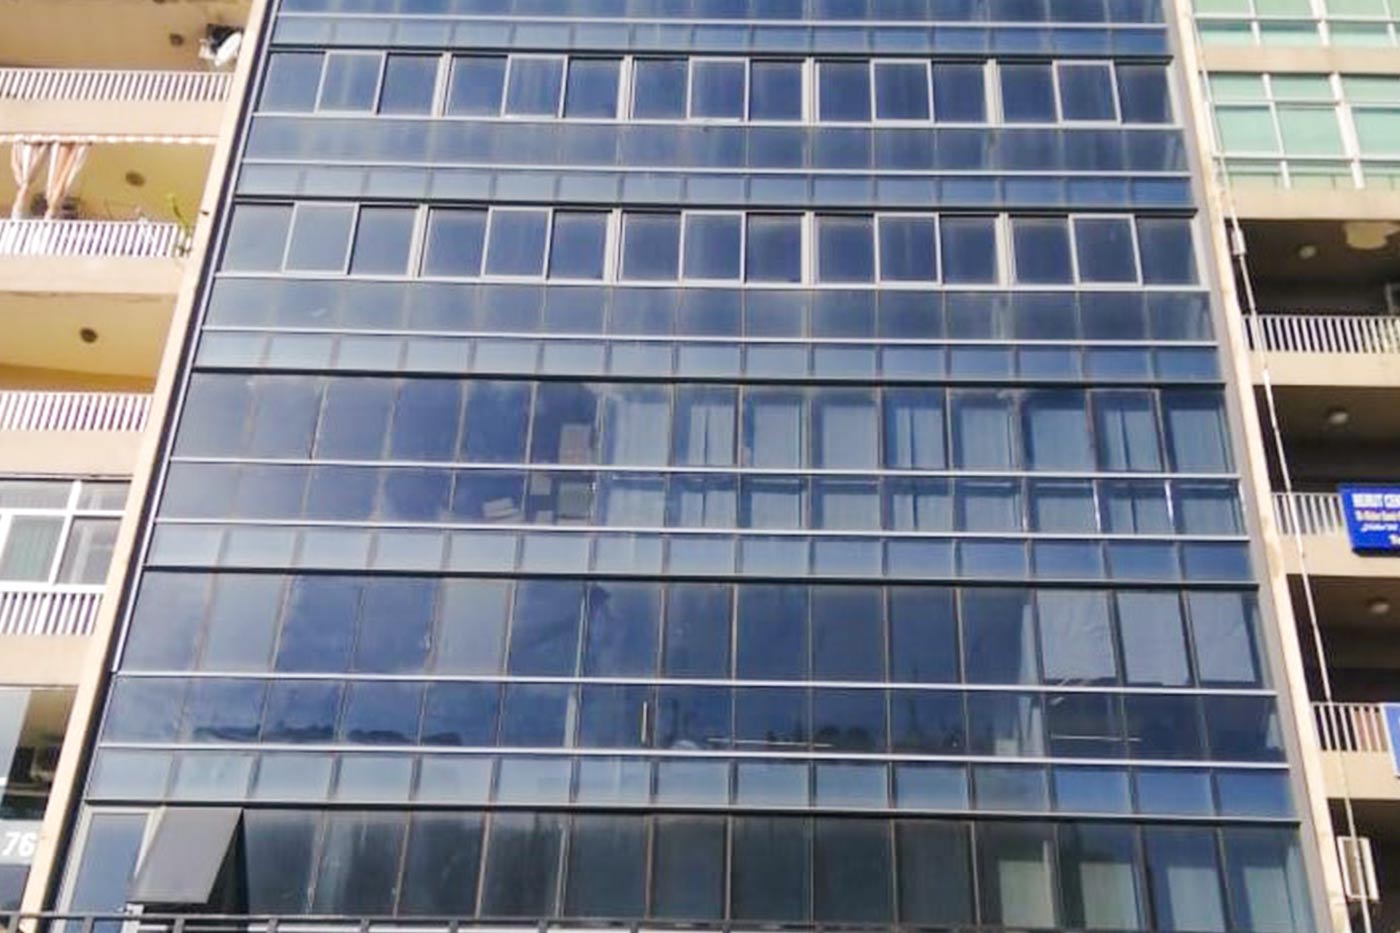 Msaytbeh - Full Building View - Windows & Stories